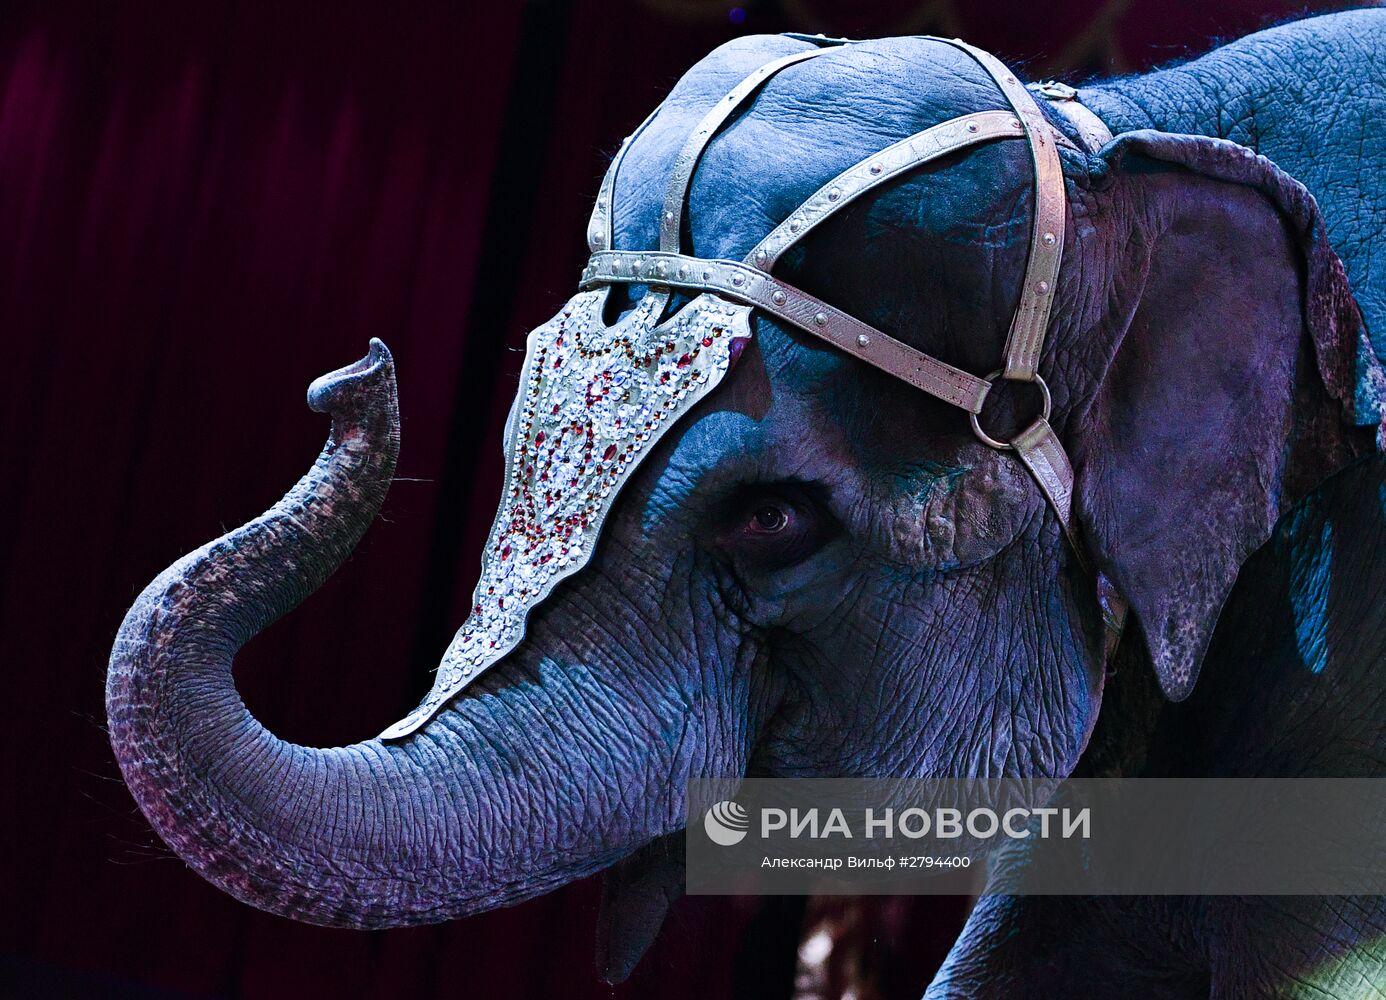 Премьера новой программы "Браво" в Московском цирке Никулина